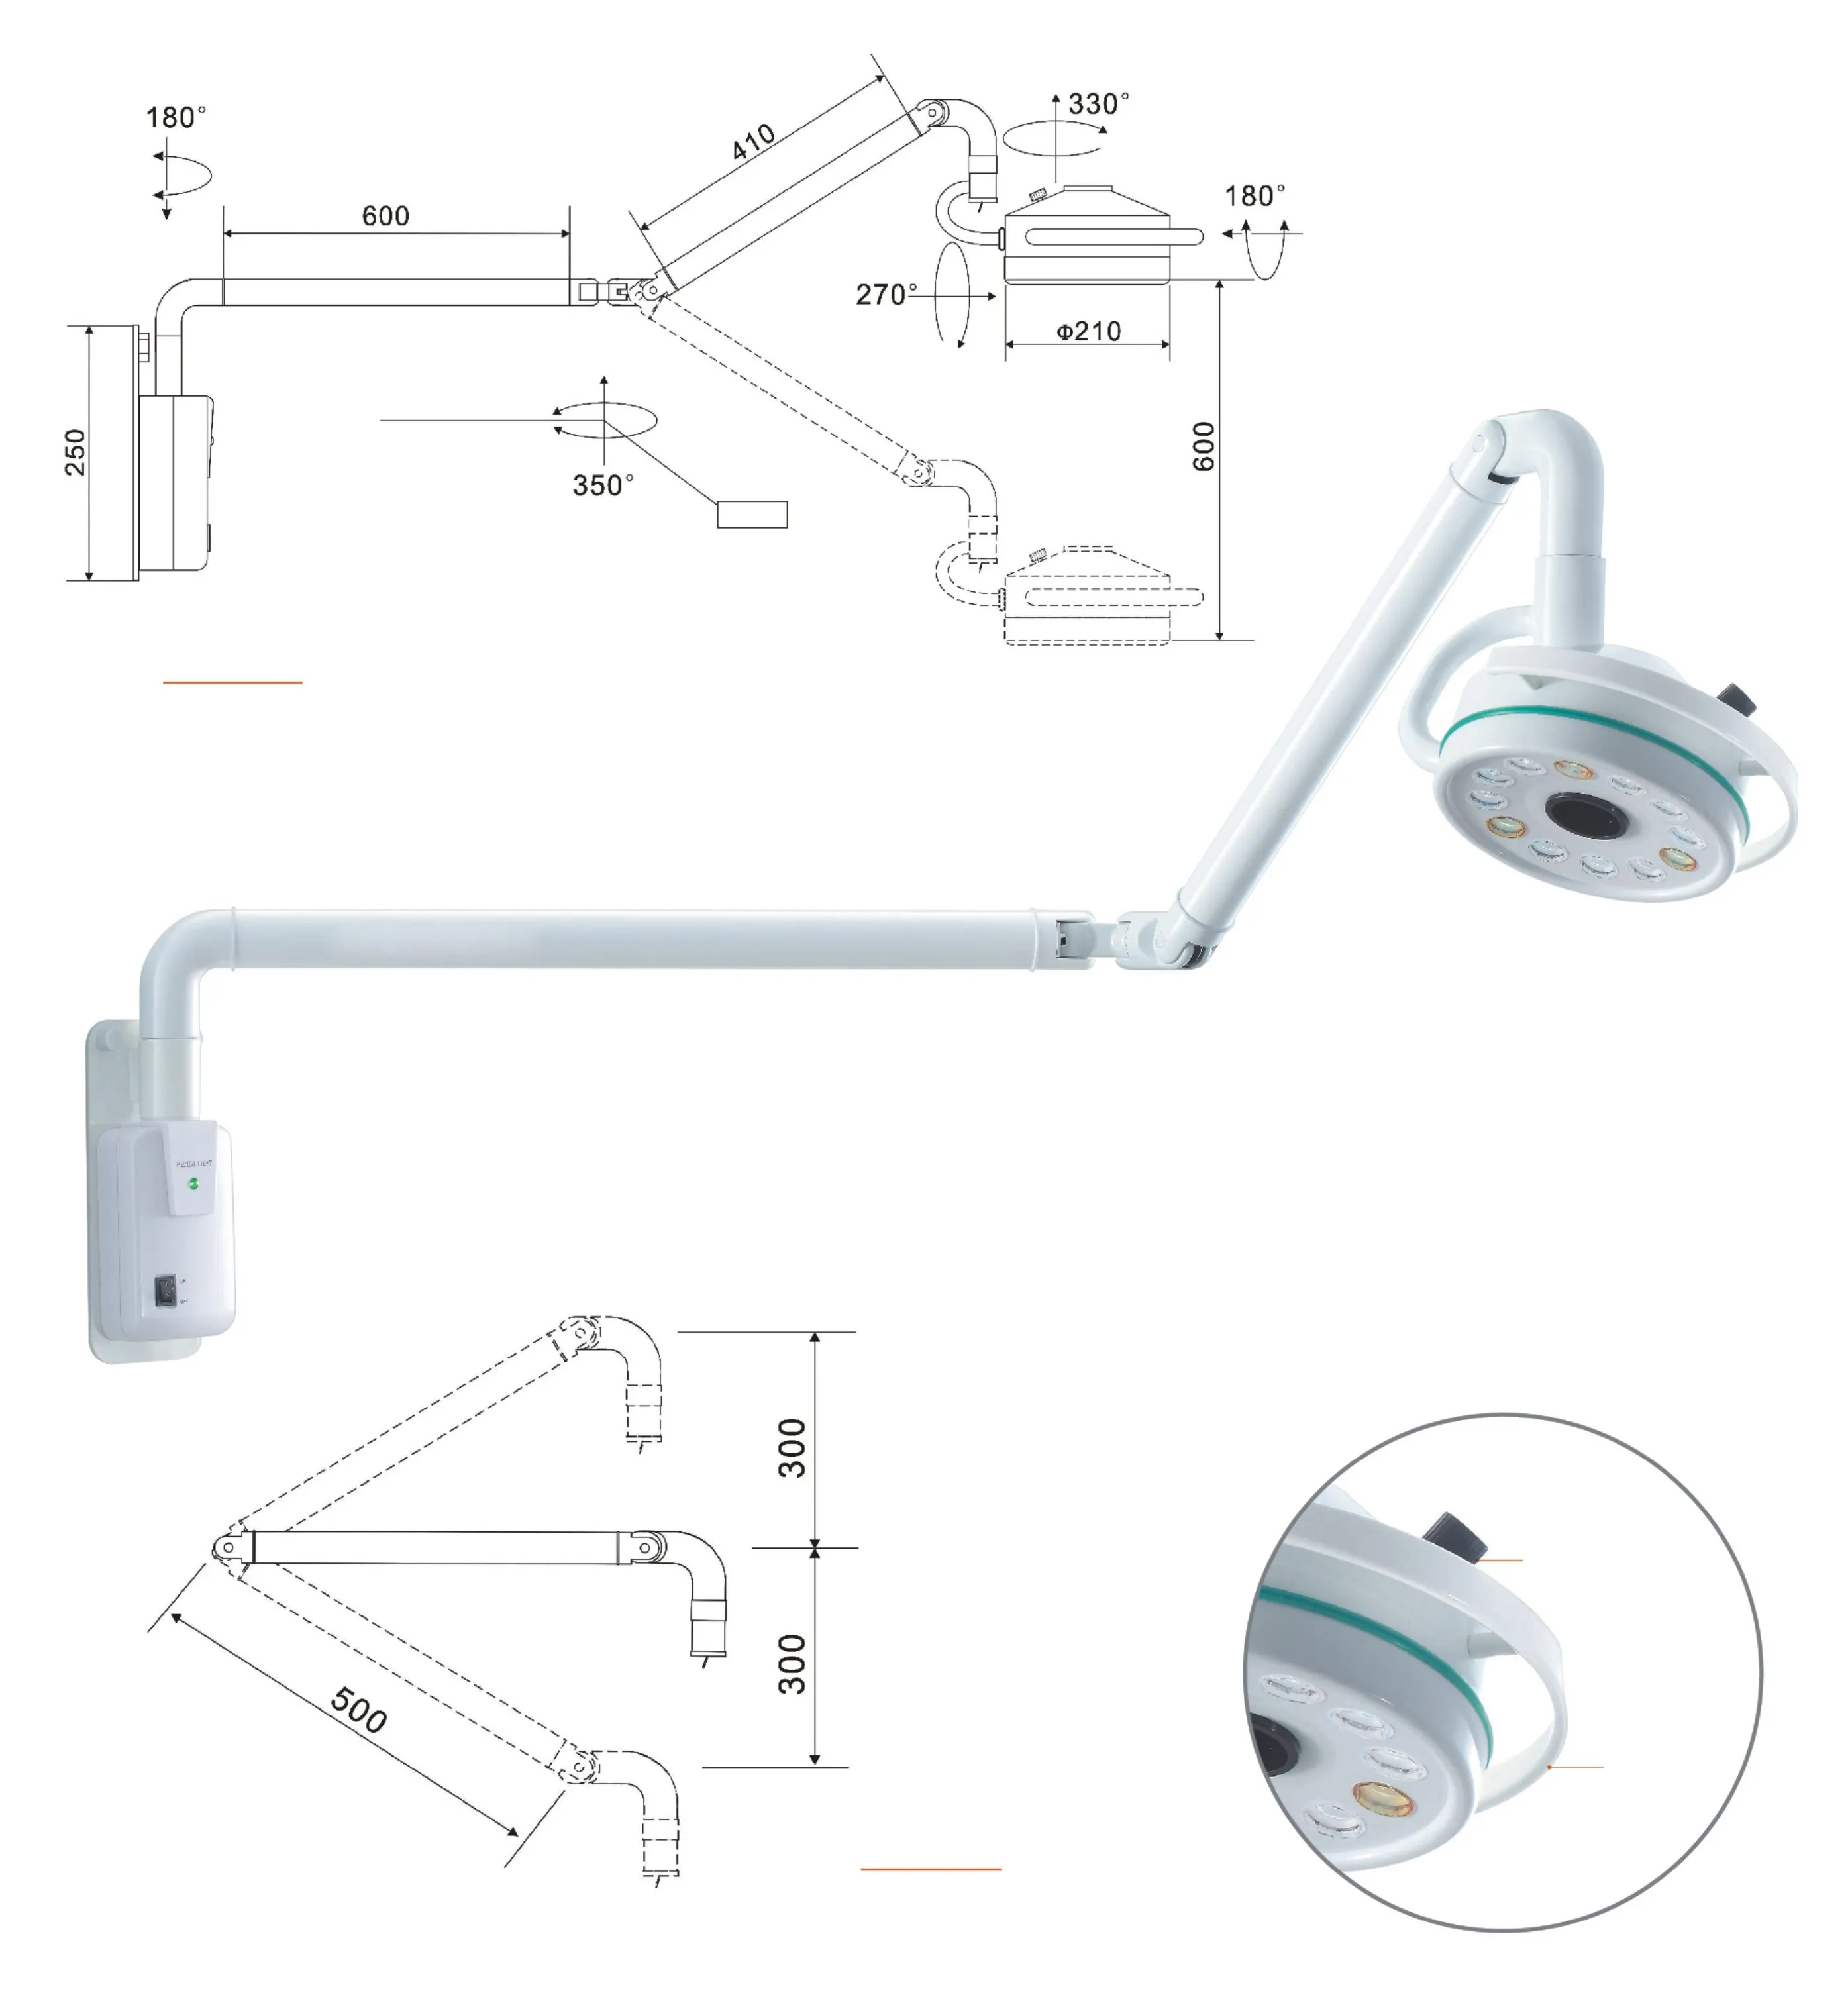 FN-2012D 시리즈 그림자 없는 12 구멍 LED 교수형/천장/경미한 수술용 다리 검사 등